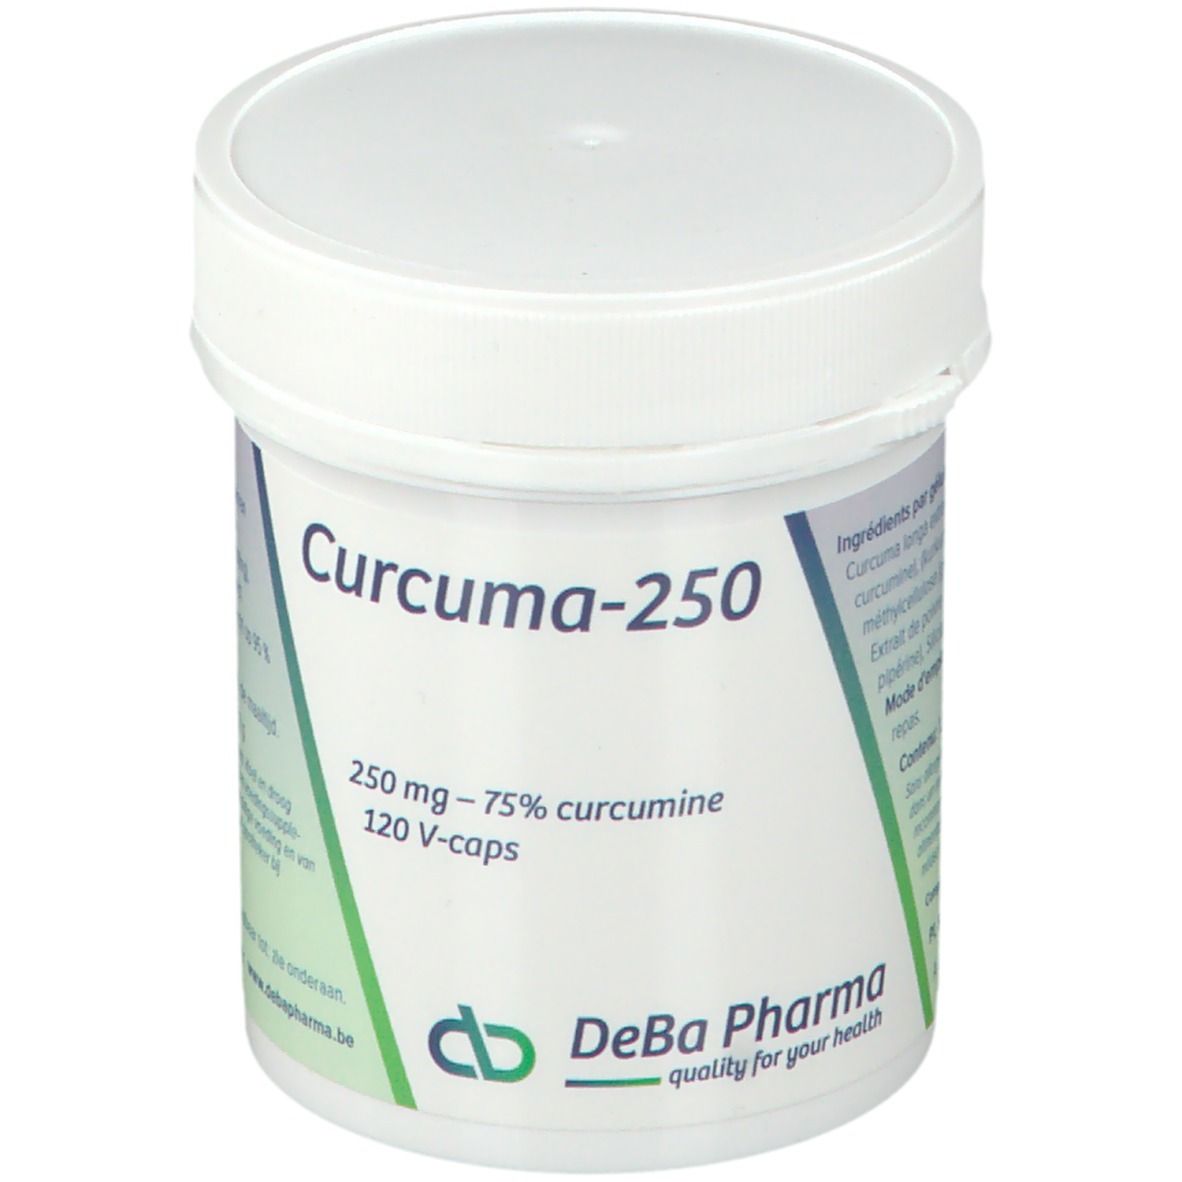 DeBa Pharma Curcuma 250 mg